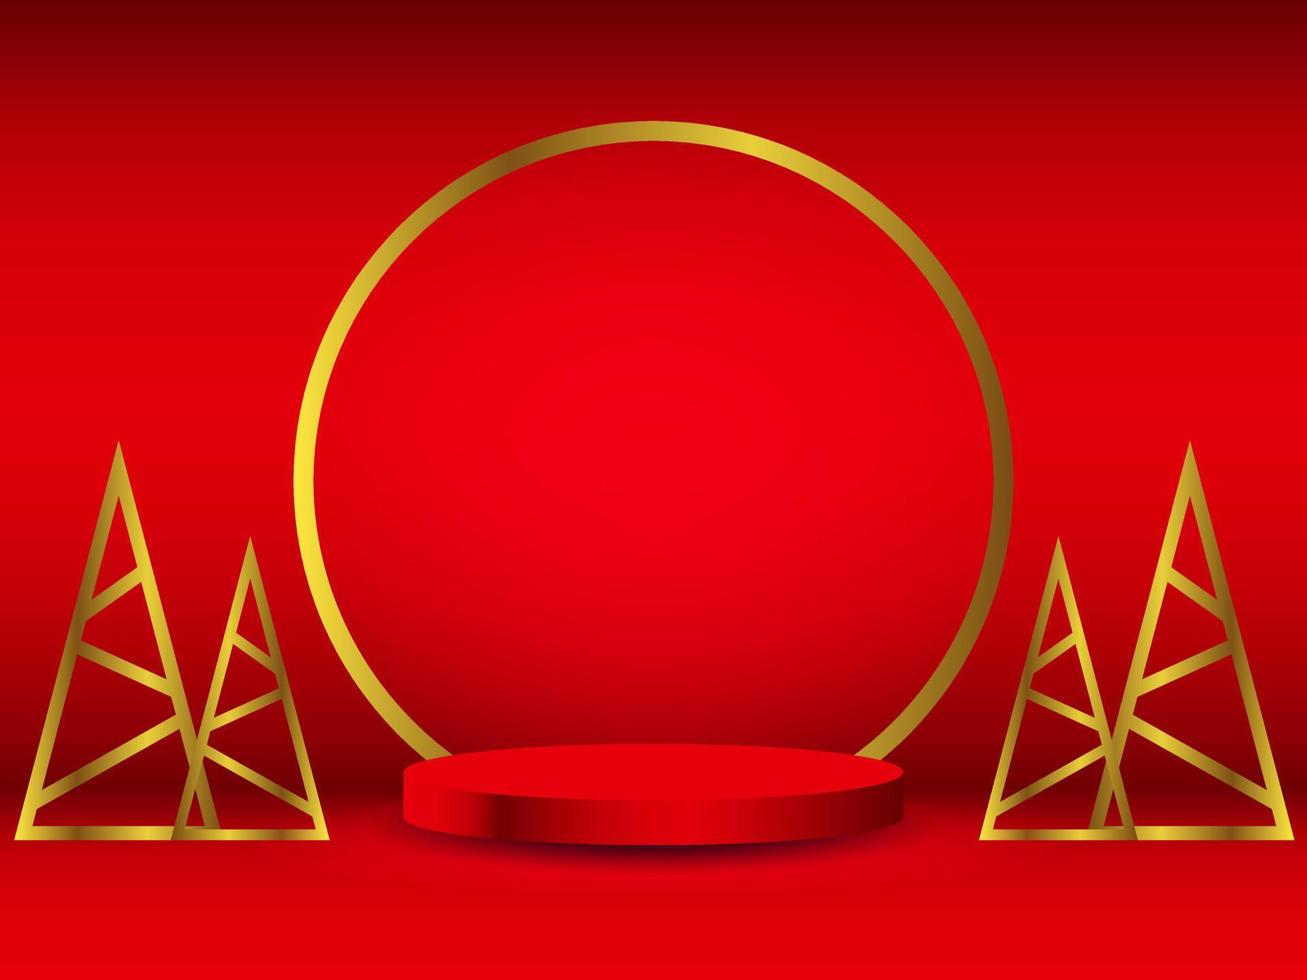 podio de pedestal de cilindro 3d realista rojo con círculo dorado y árbol de navidad de triángulo dorado. escena de feliz navidad para exhibición de promoción, exhibición de productos. sala de estudio abstracto vectorial vector